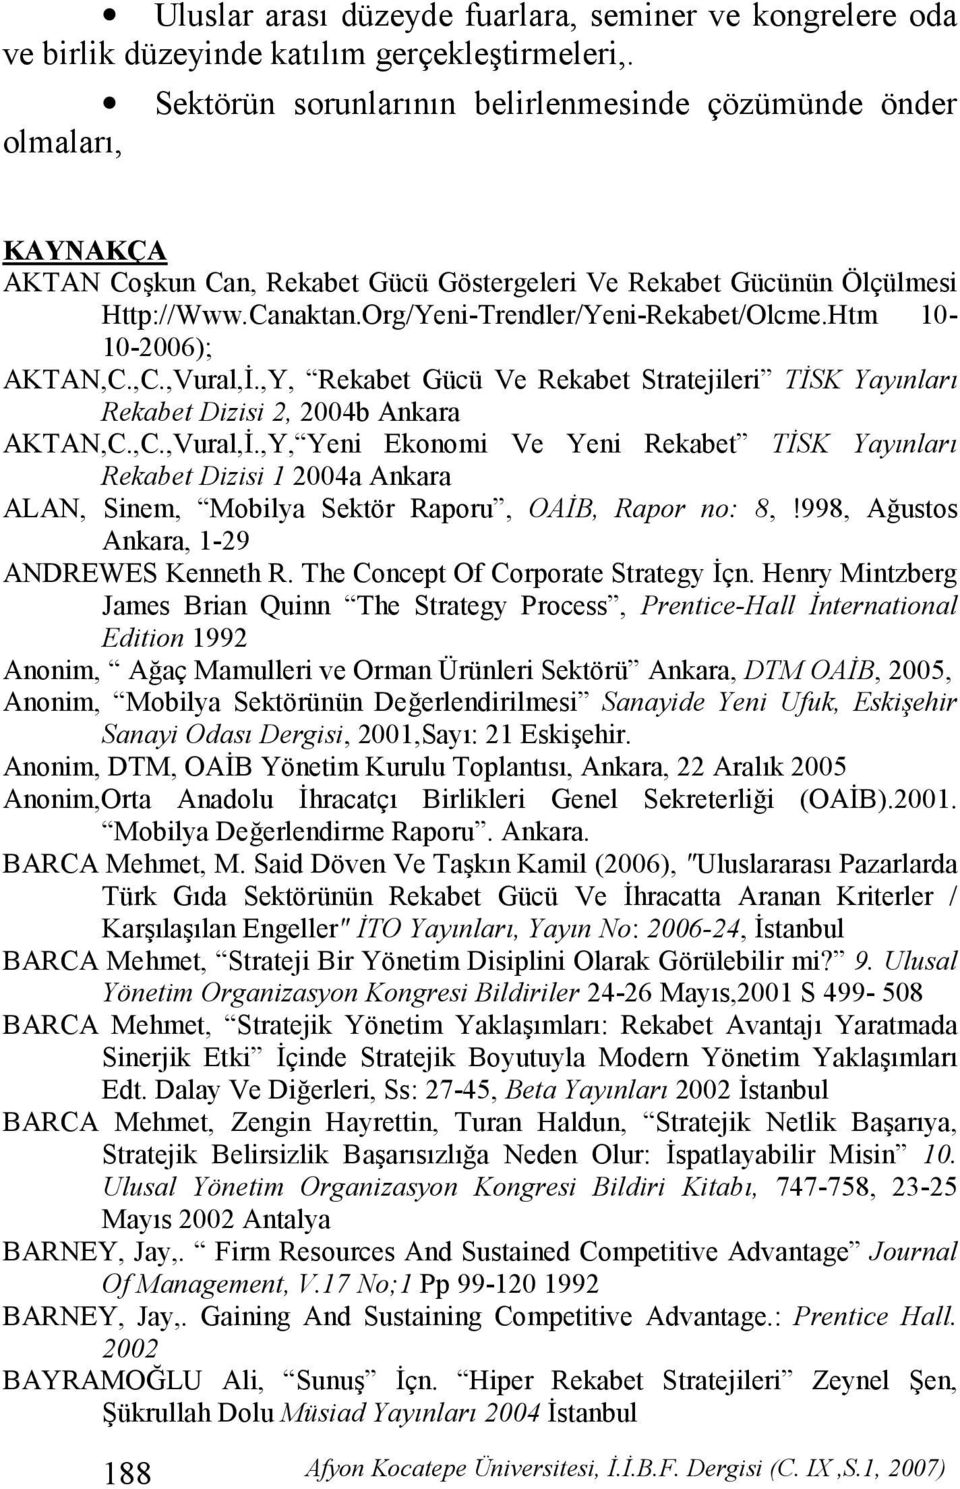 Htm 10-10-2006); AKTAN,C.,C.,Vural,(.,Y, Rekabet Gücü Ve Rekabet Stratejileri TSK Yay.nlar. Rekabet Dizisi 2, 2004b Ankara AKTAN,C.,C.,Vural,(.,Y, Yeni Ekonomi Ve Yeni Rekabet TSK Yay.nlar. Rekabet Dizisi 1 2004a Ankara ALAN, Sinem, Mobilya Sektör Raporu, OAB, Rapor no: 8,!